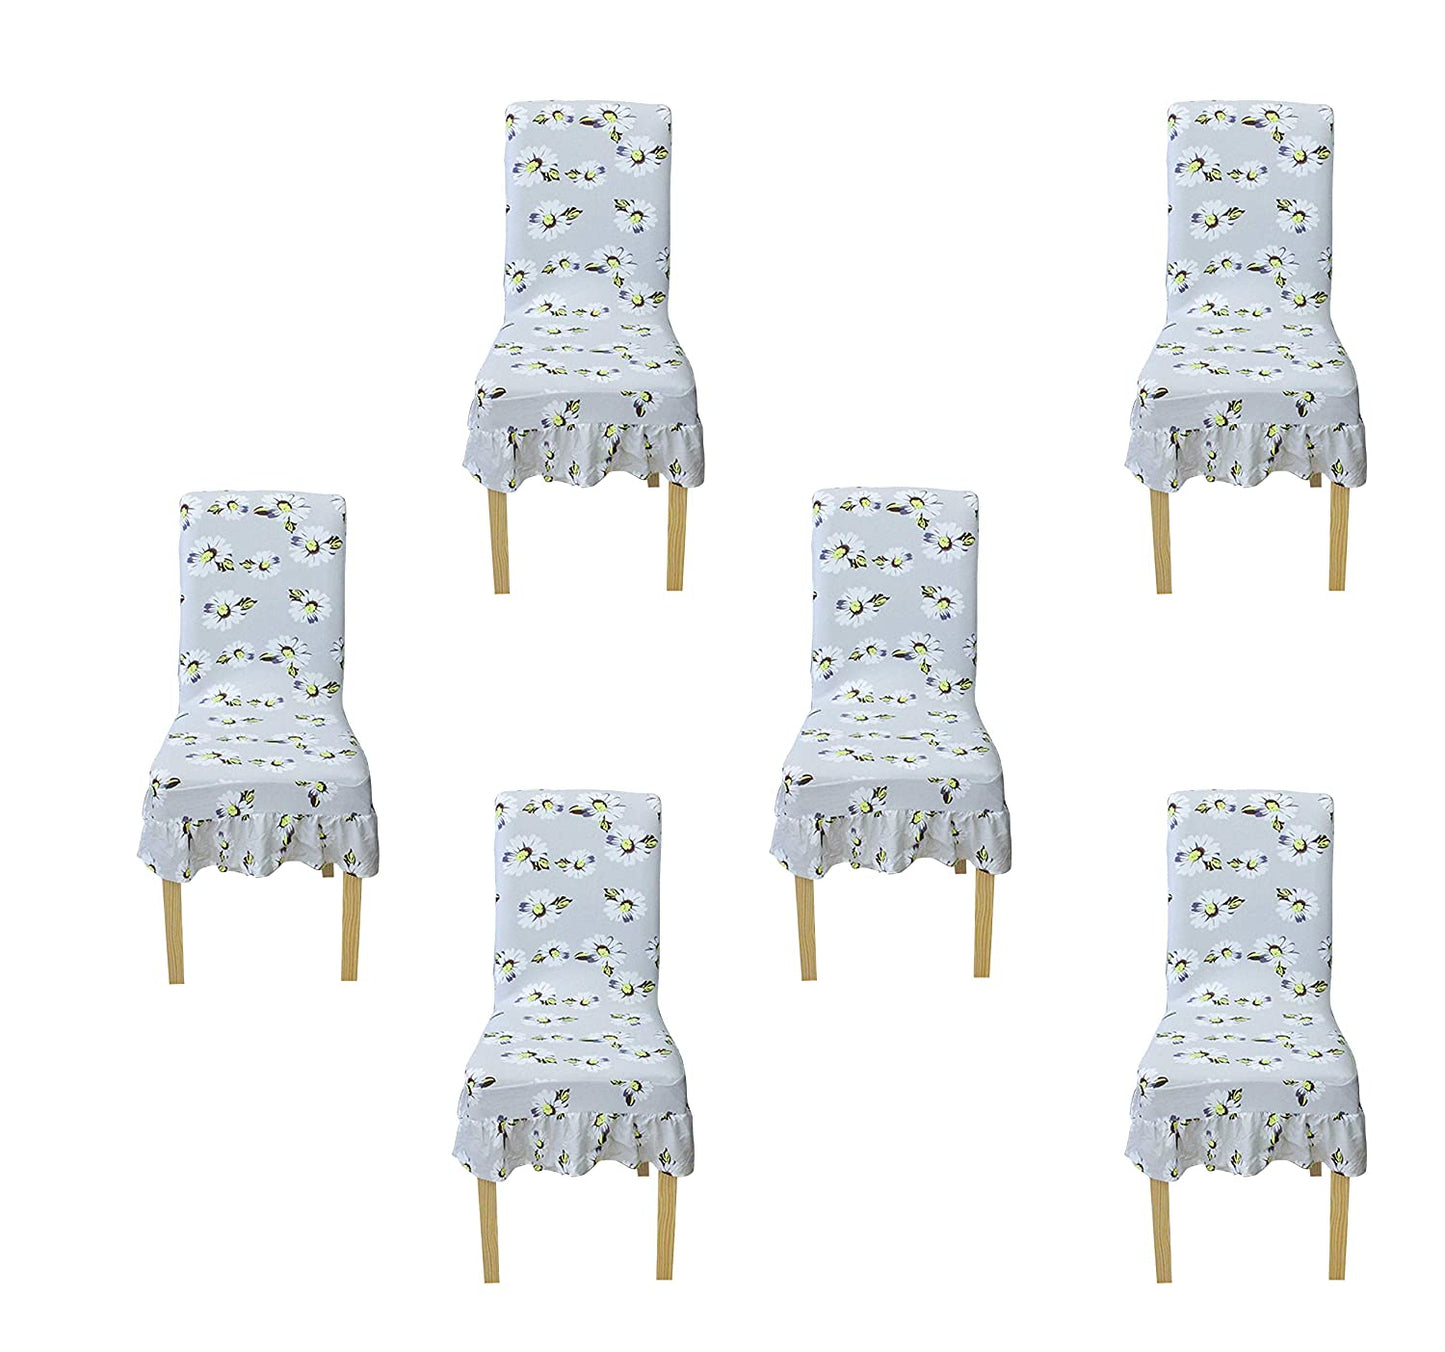 Printed Elastic Chair Cover - Grey Nargis